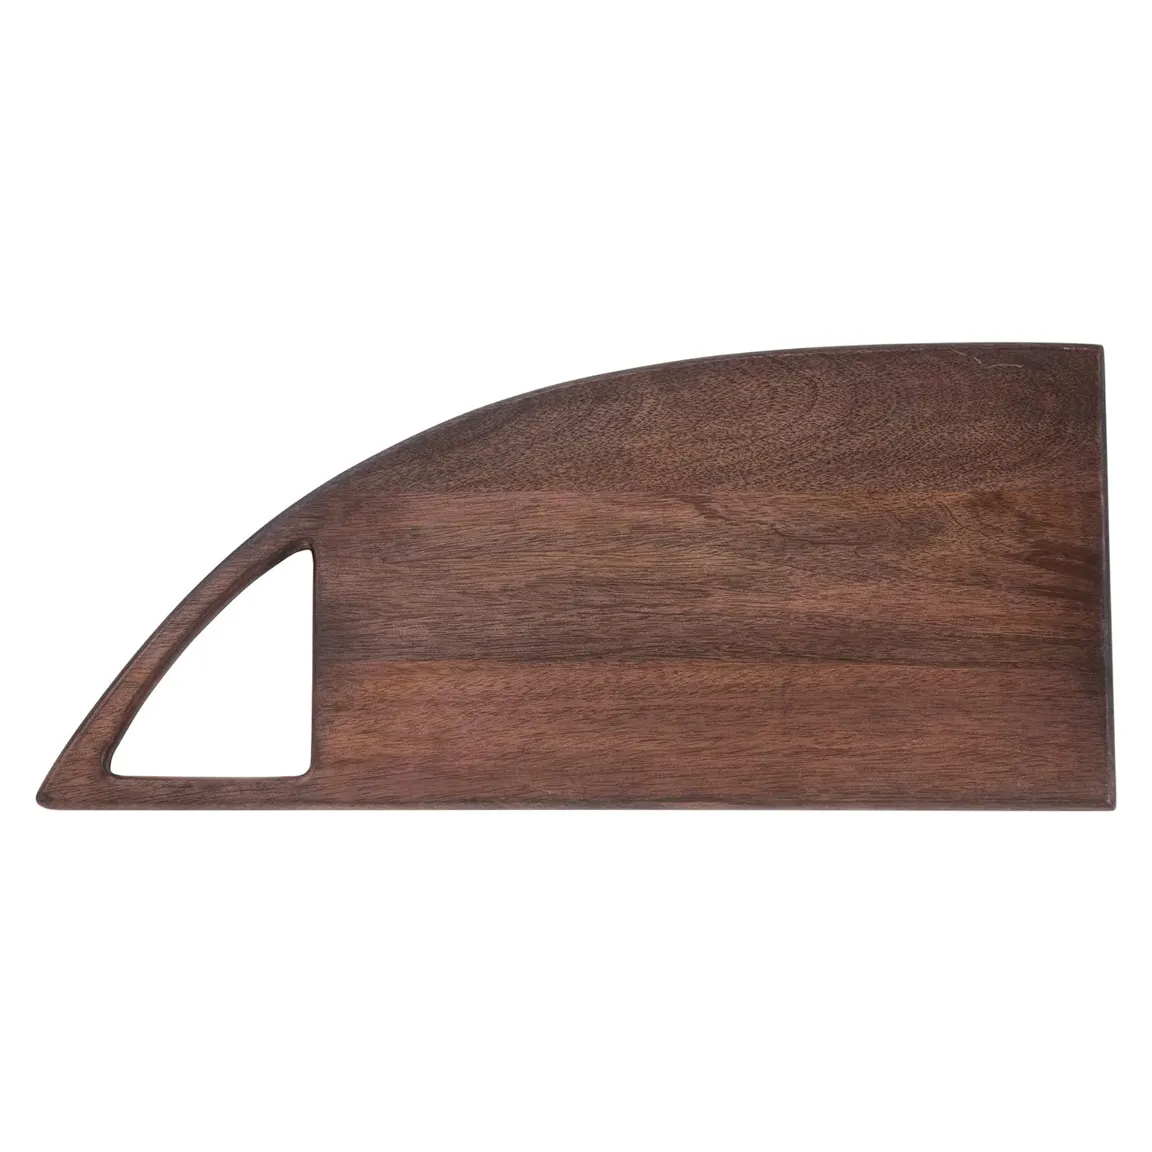 Planche à découper longue en bois massif Essentiel culinaire élégant pour les cuisines contemporaines Planche à découper personnalisée en forme de triangle